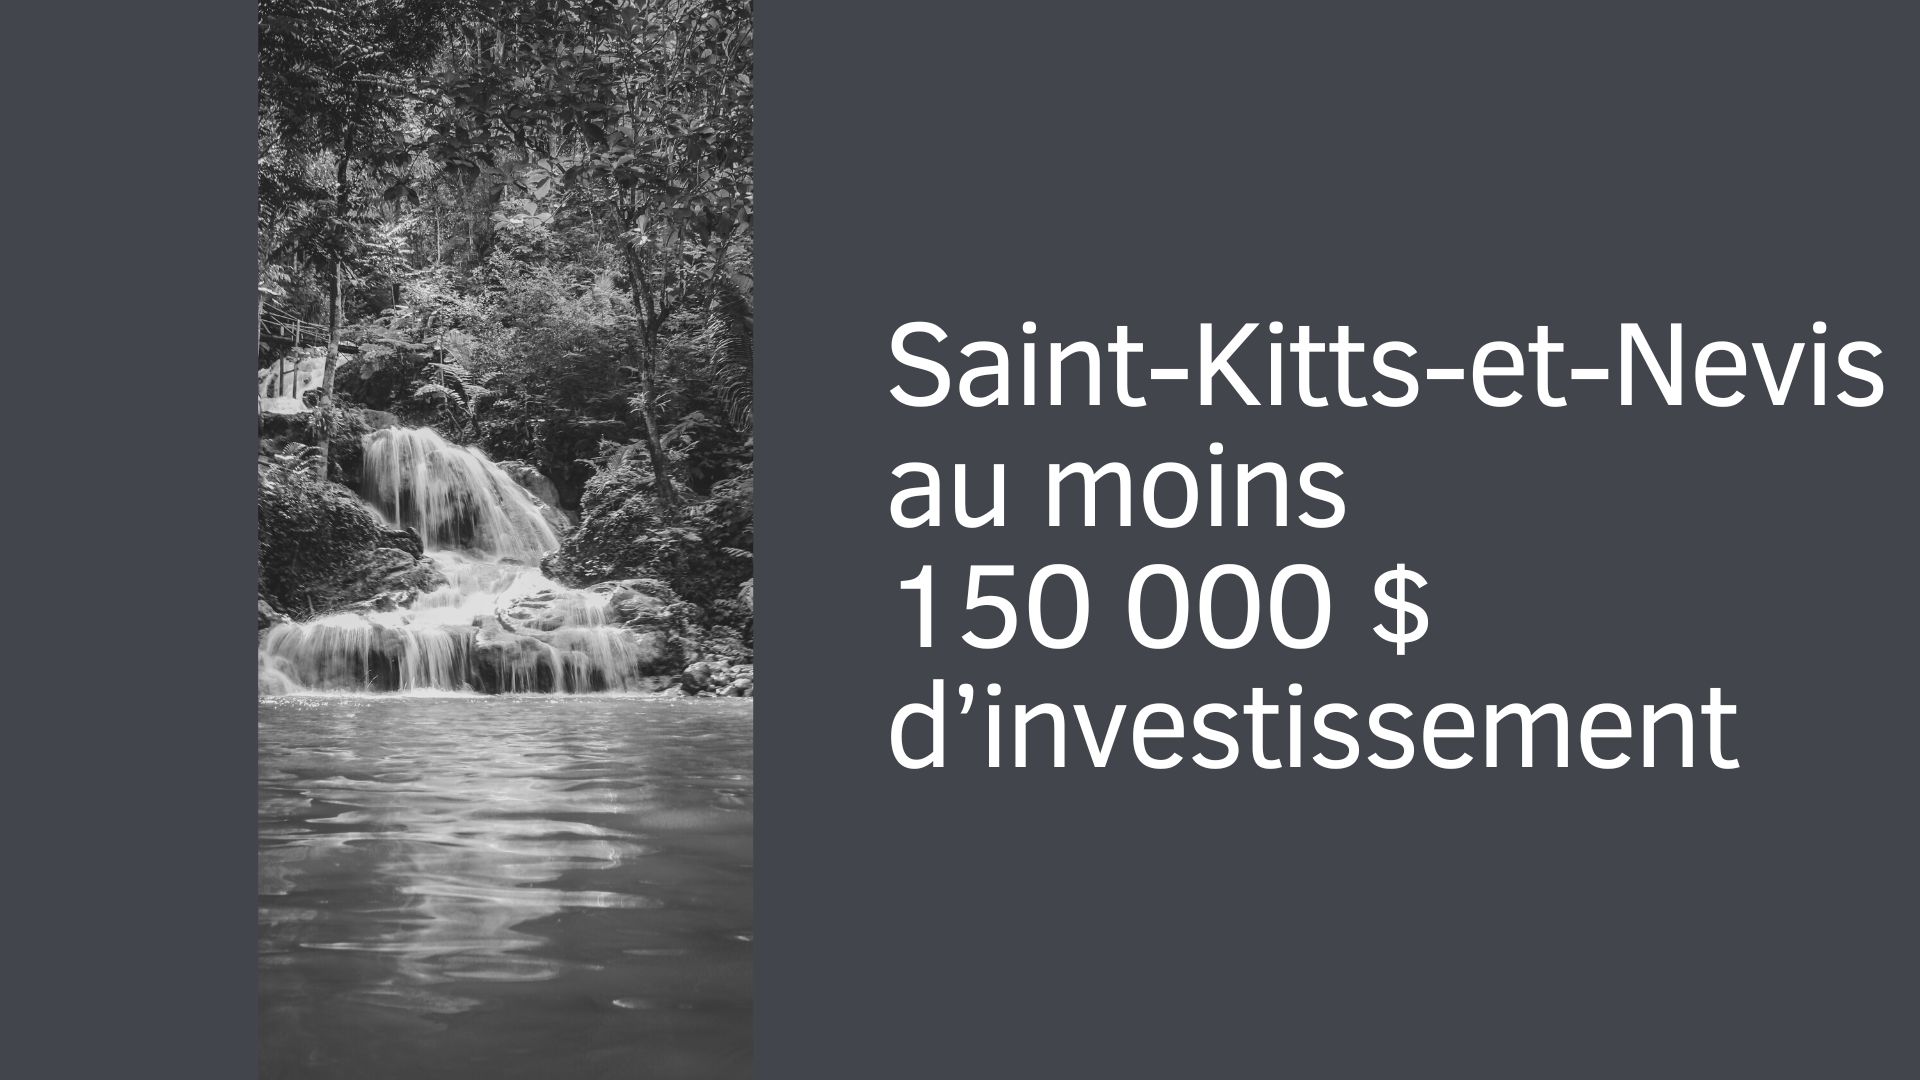 Saint-Kitts-et-Nevis : au moins 150 000 $ d’investissement